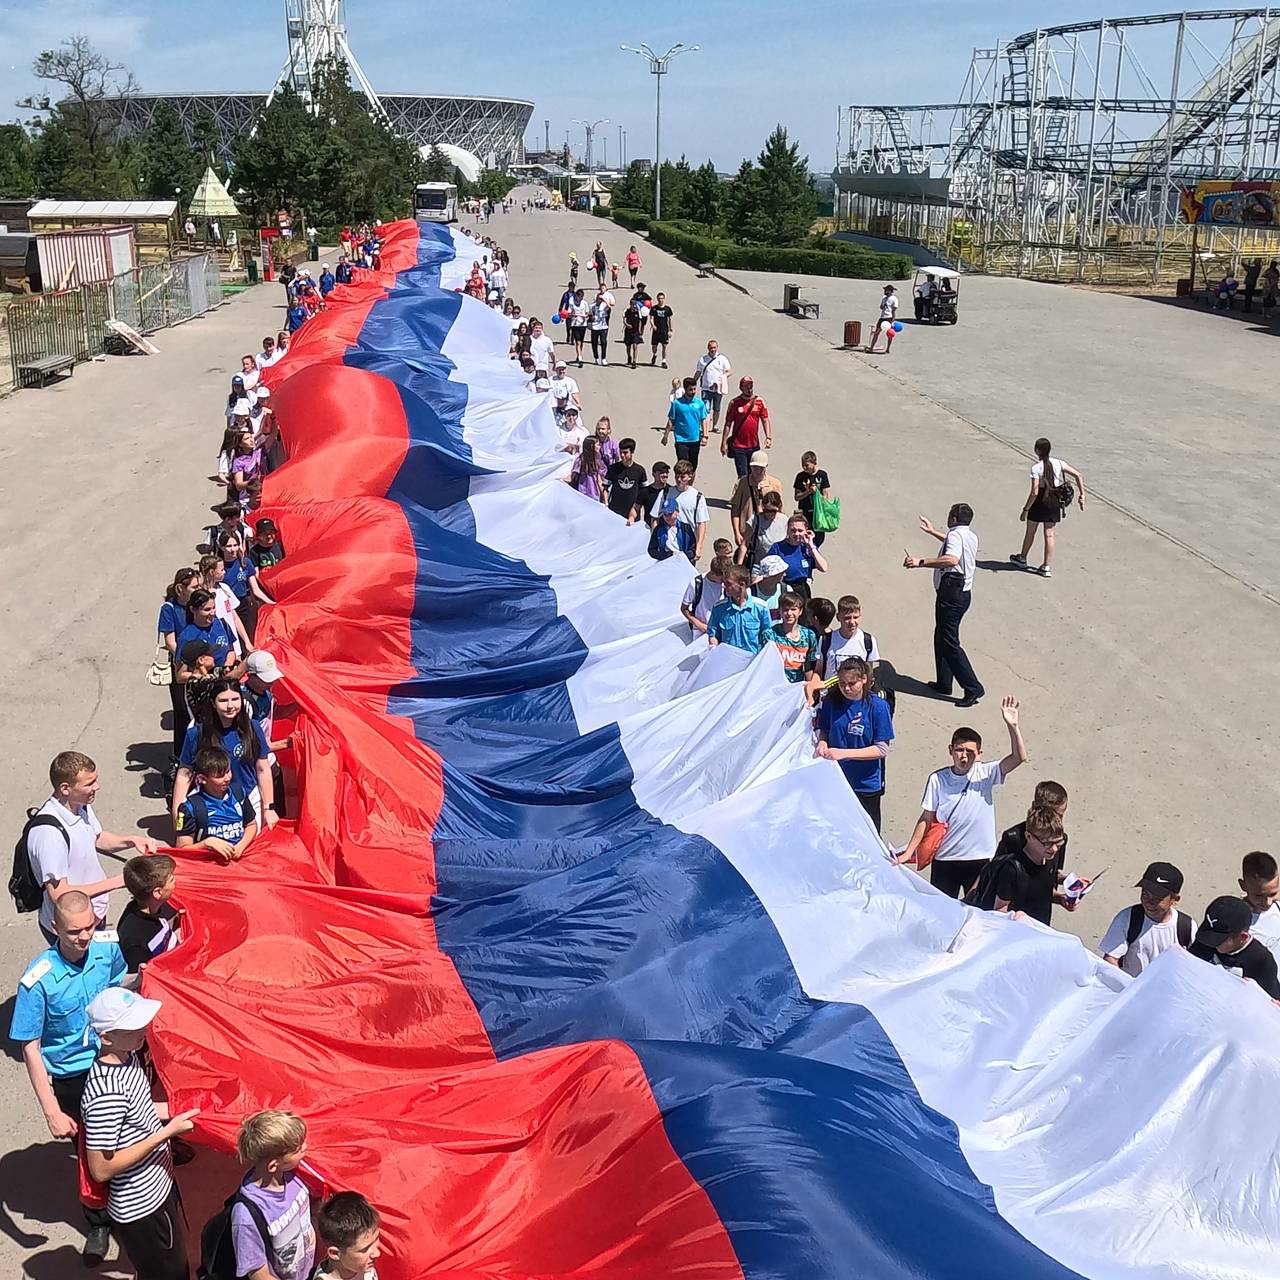 День Государственного флага России в МАДОУ 5